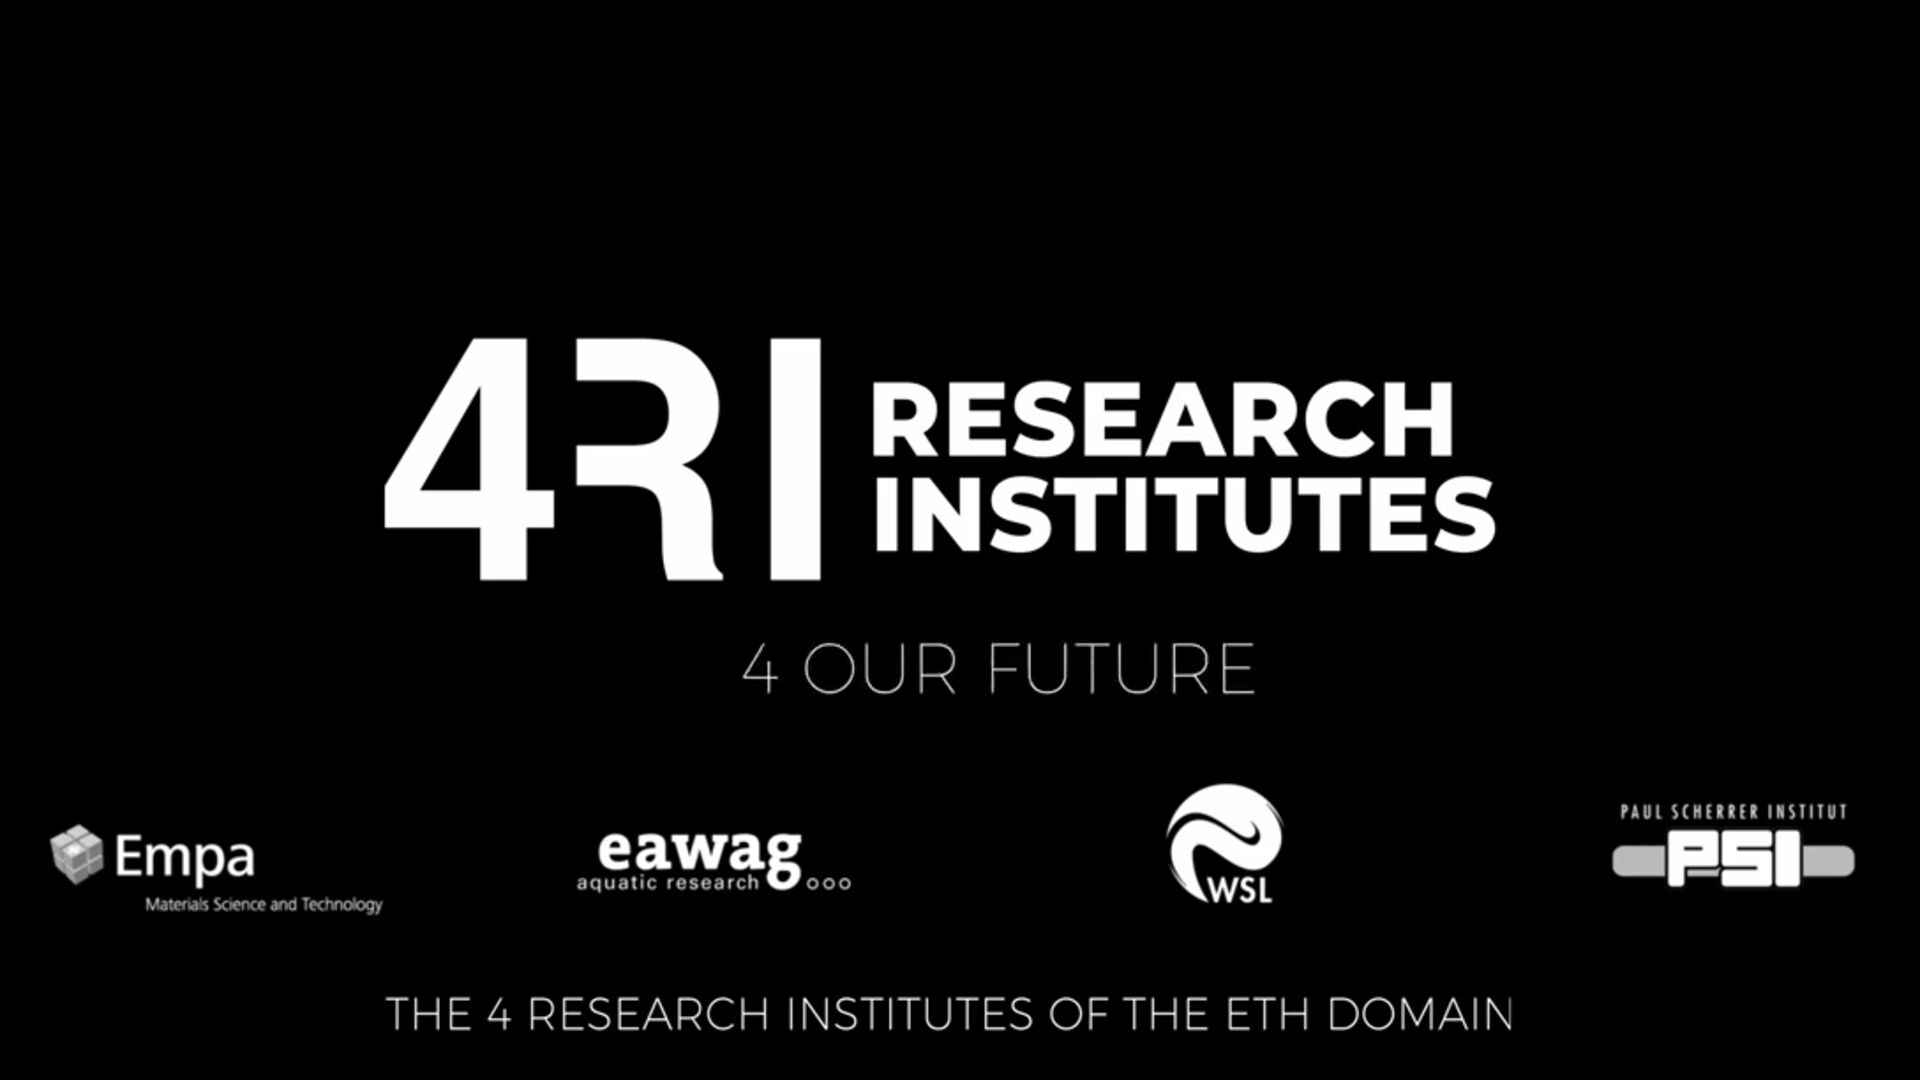 Švajčiarske výskumné centrá: EMPA, EAWAG, WSL a PSI